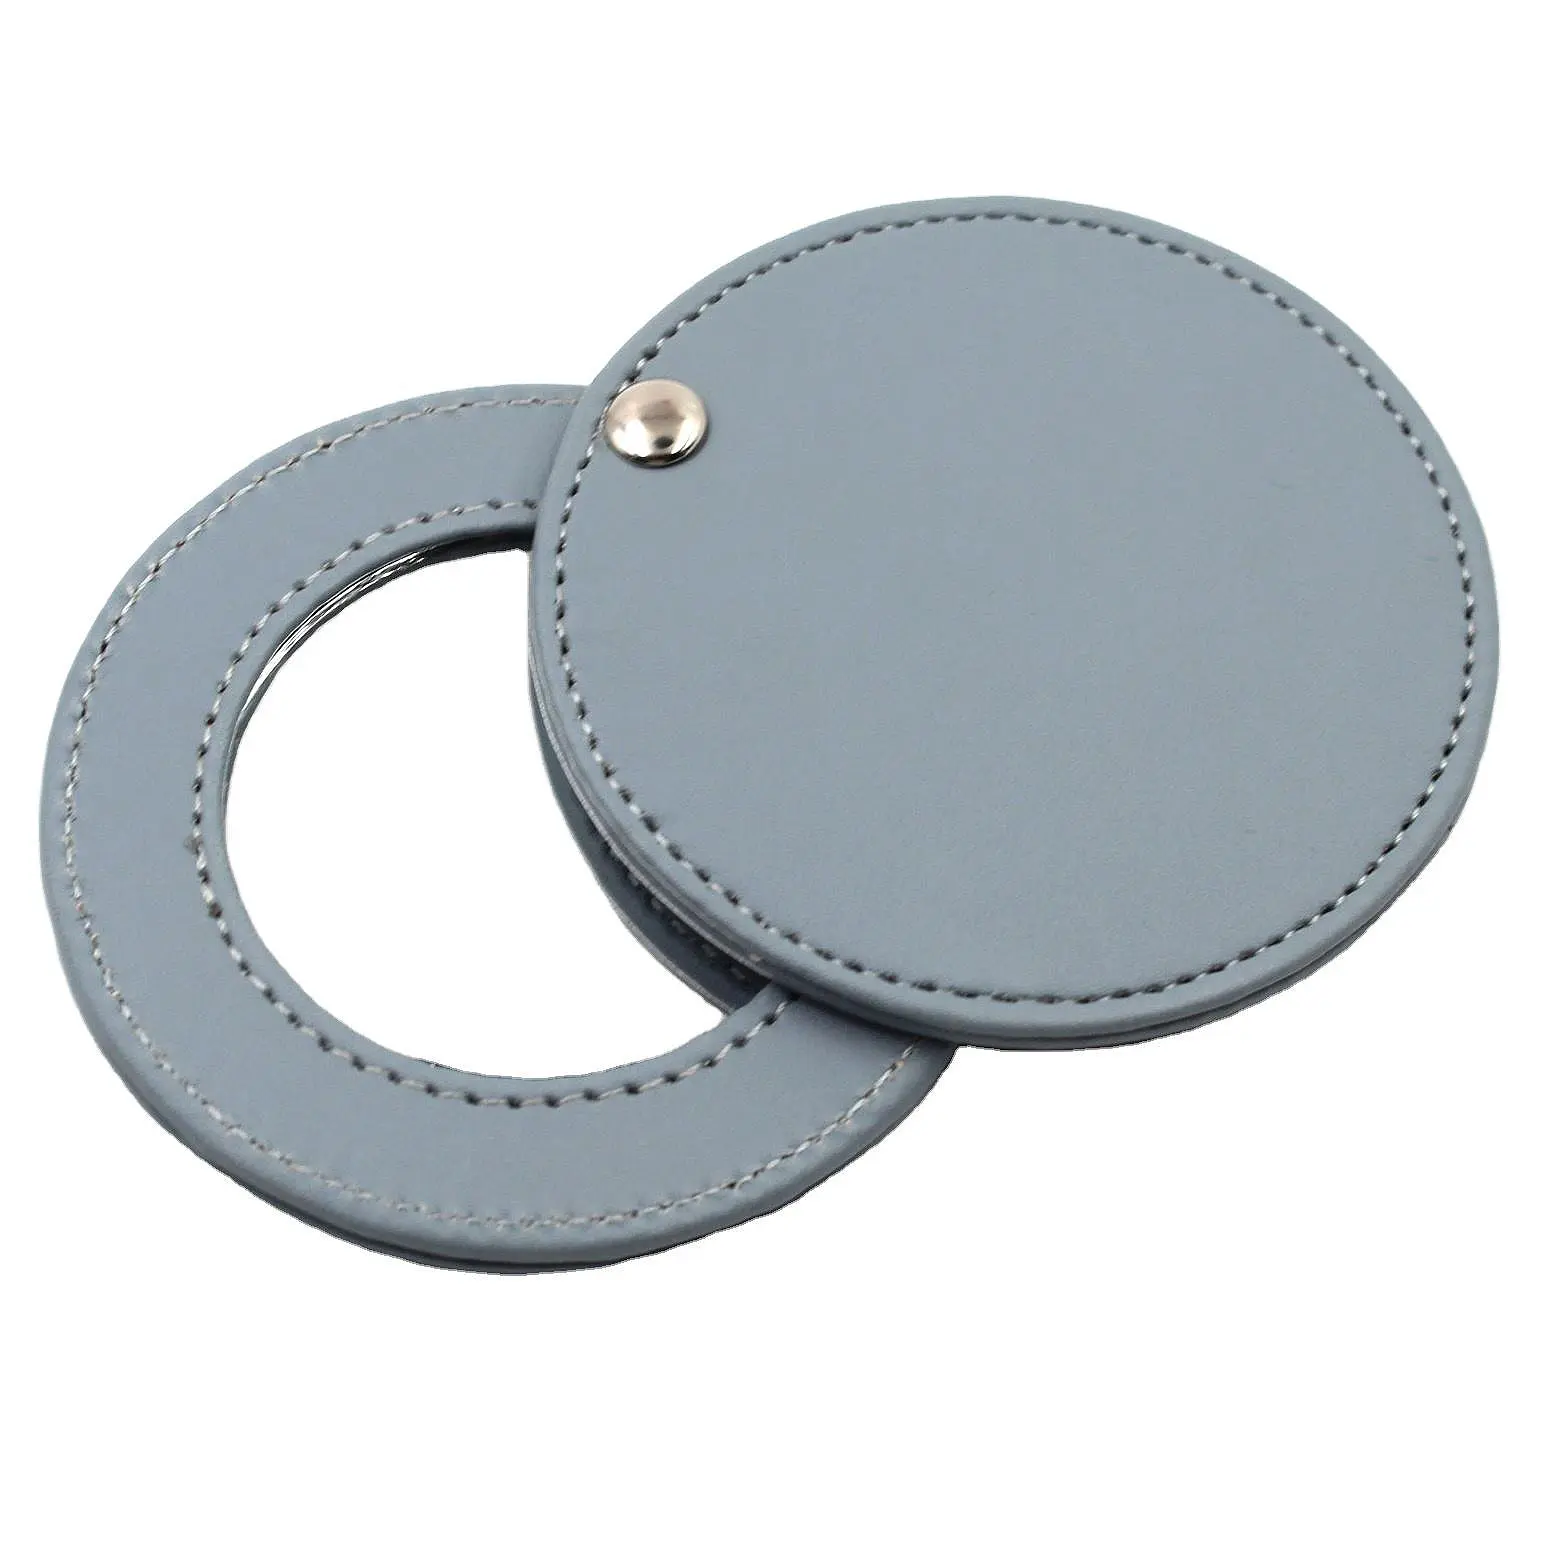 Mini PU Leder Make-up Kompakt spiegel Anpassen Deboss Logo Drehen Clam shell Tragbarer Taschen spiegel